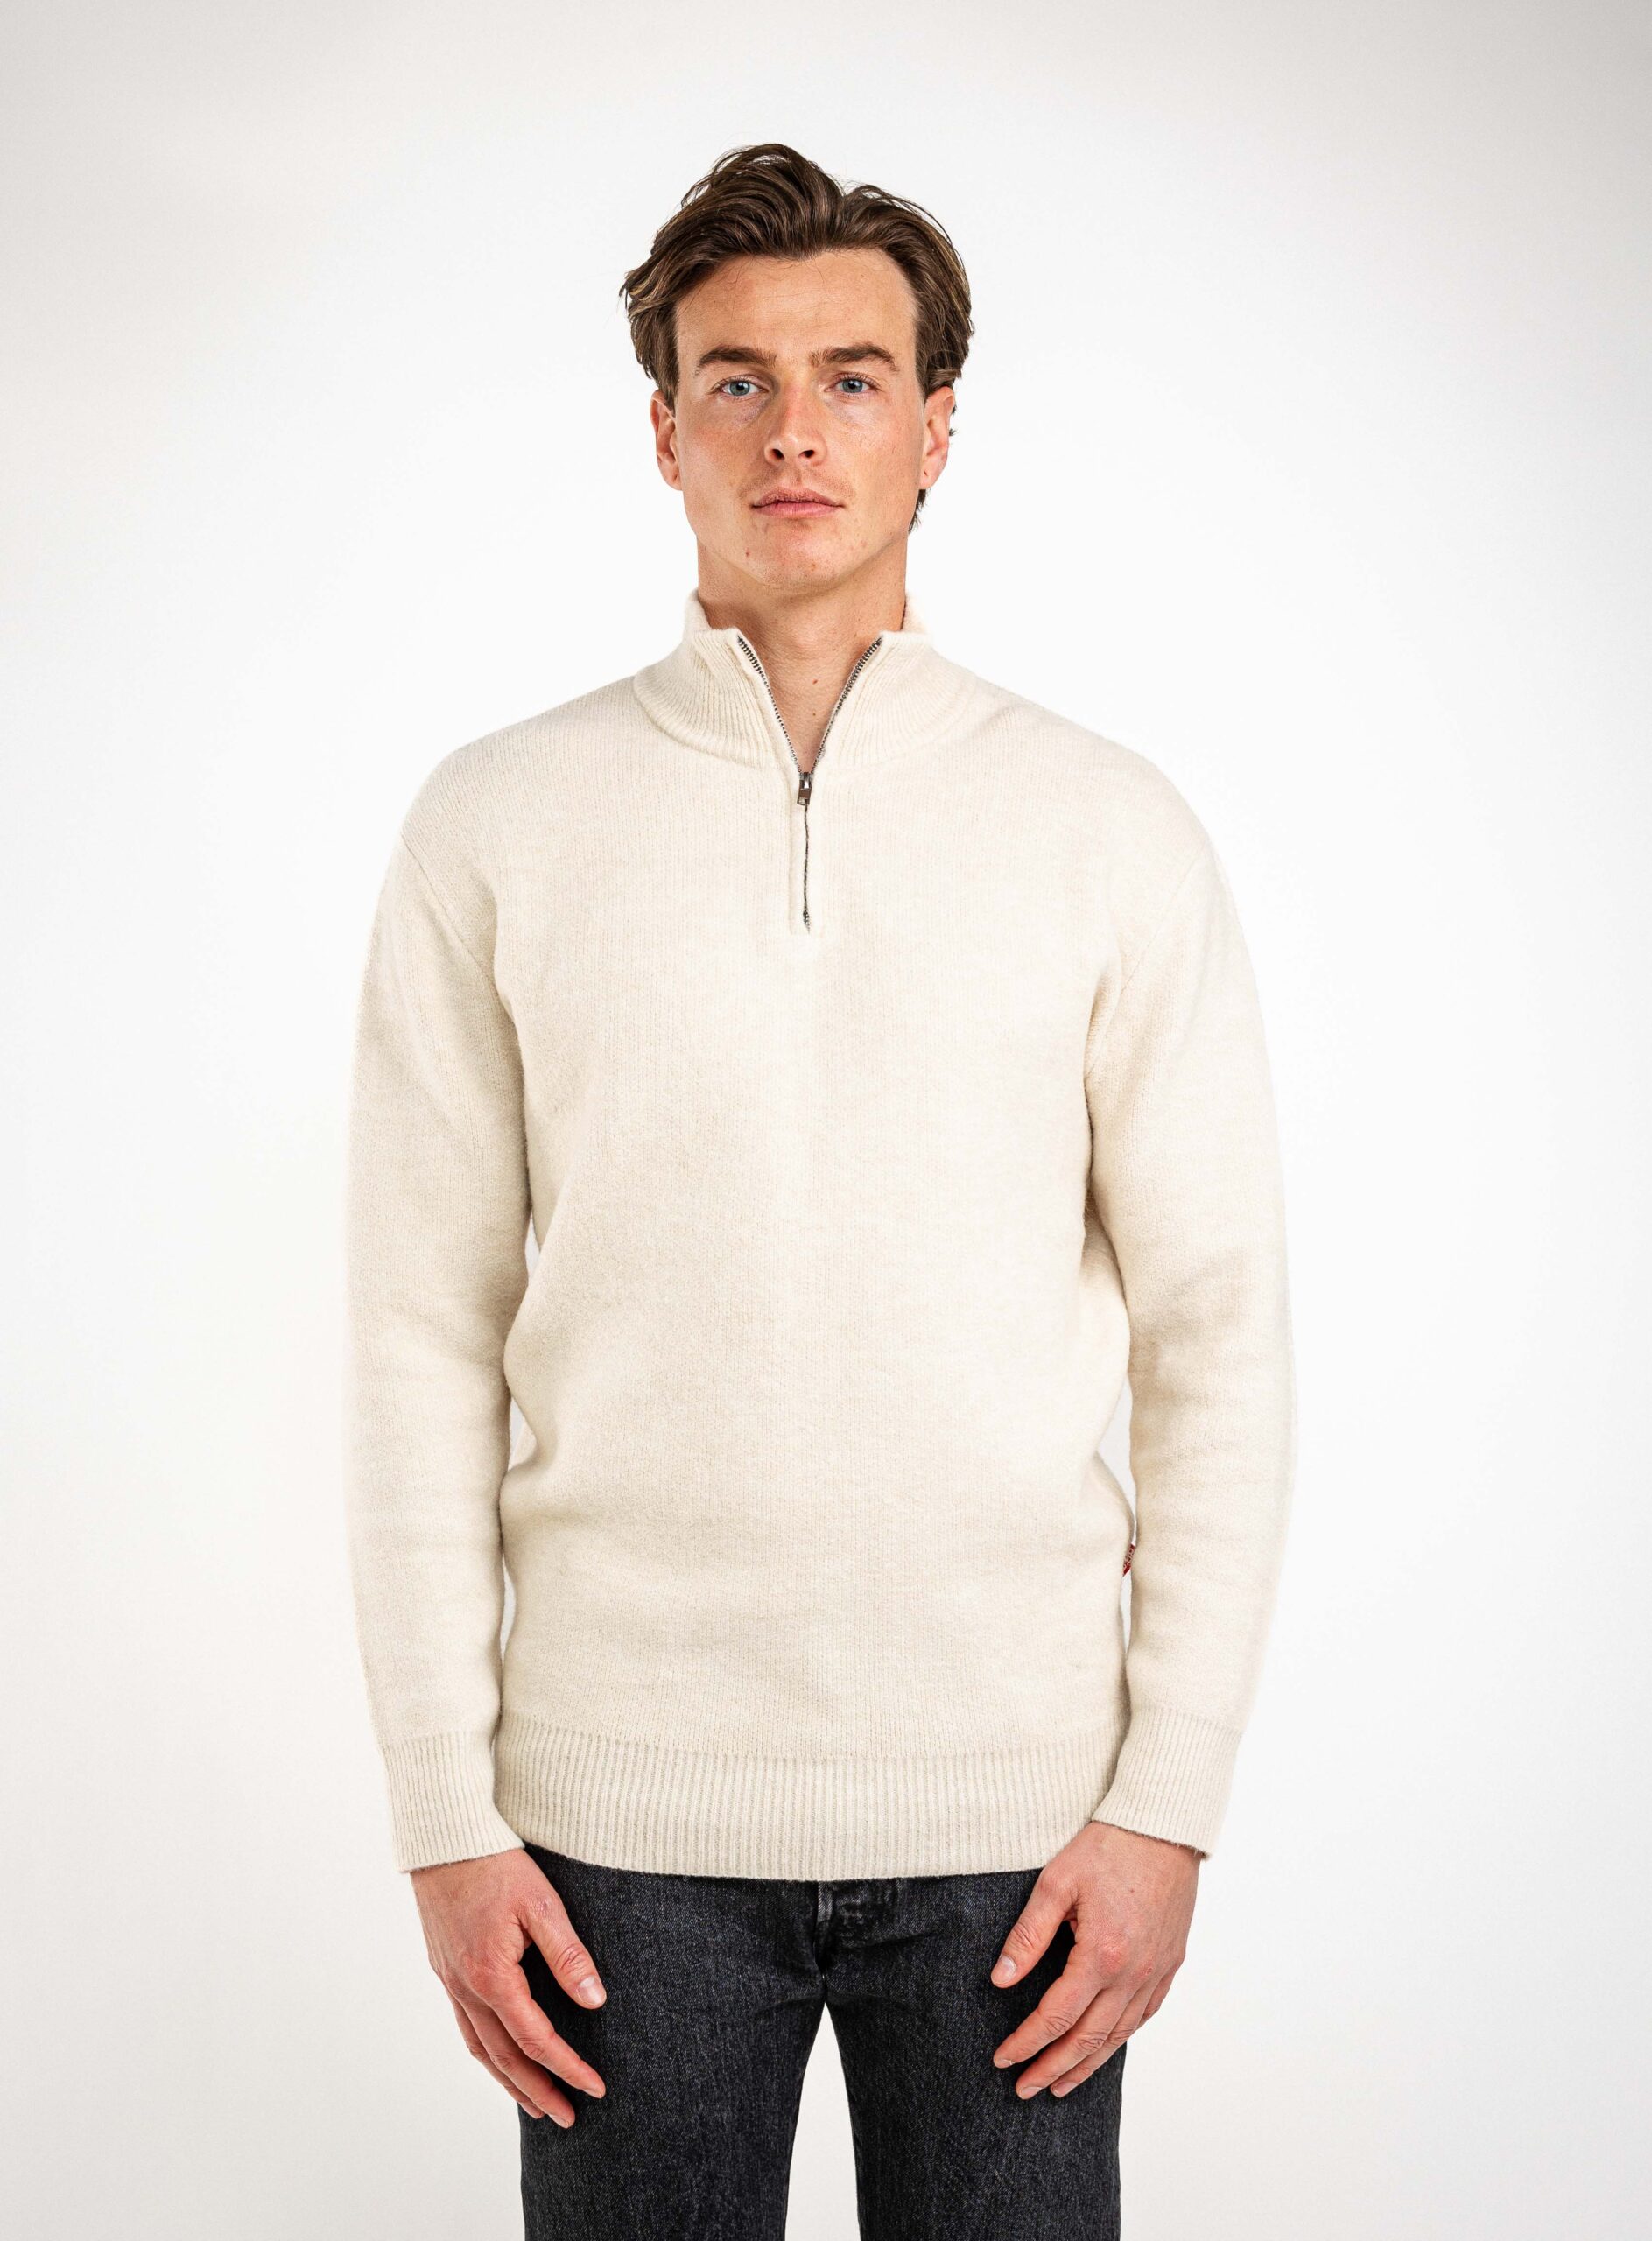 Texture Zipper Sweater 1608 WEAR